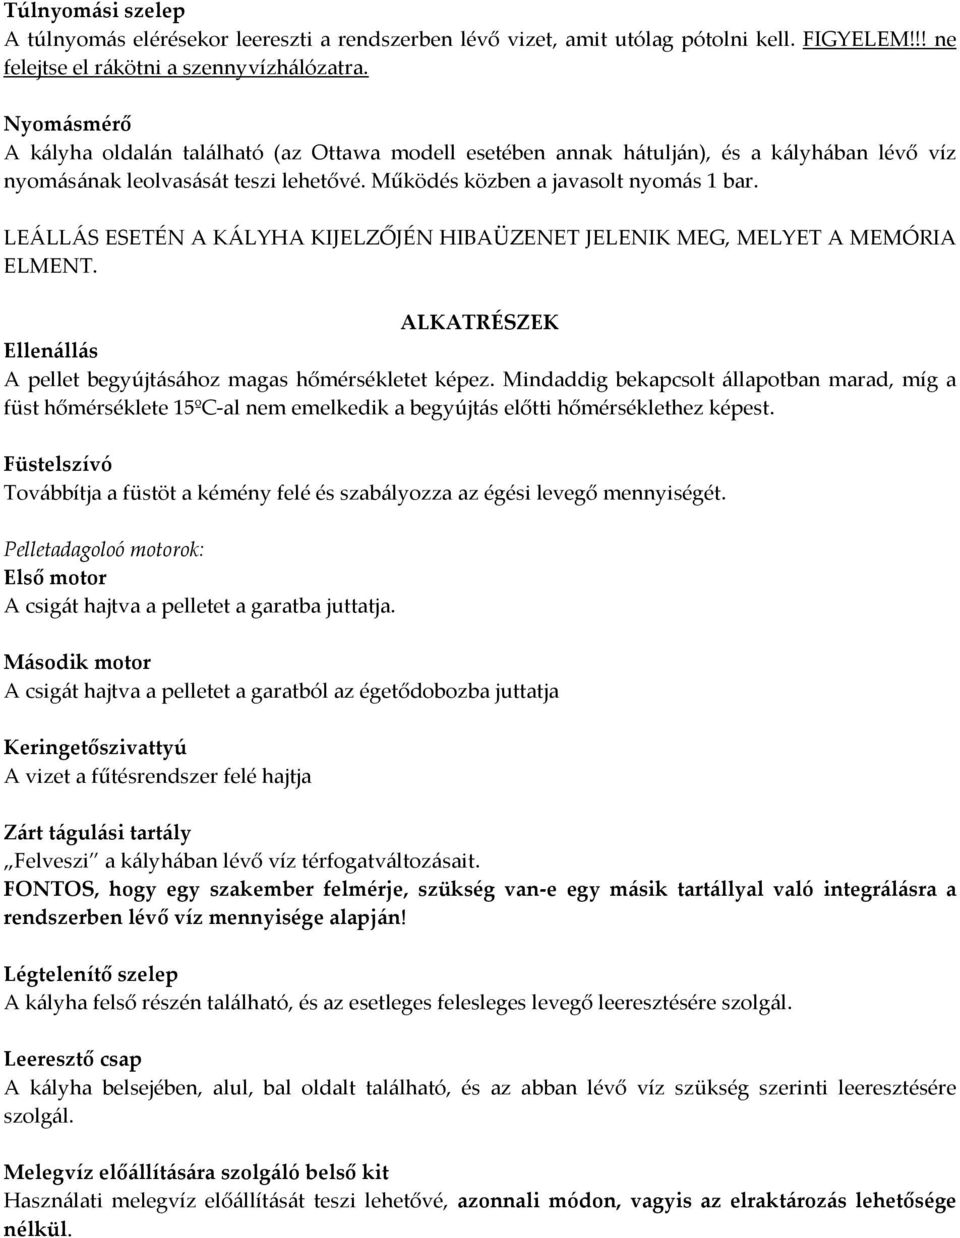 QUEBEC- TORONTO- OTTAWA- BASIC PELLETTÜZELÉSŰ KAZÁN - PDF Free Download